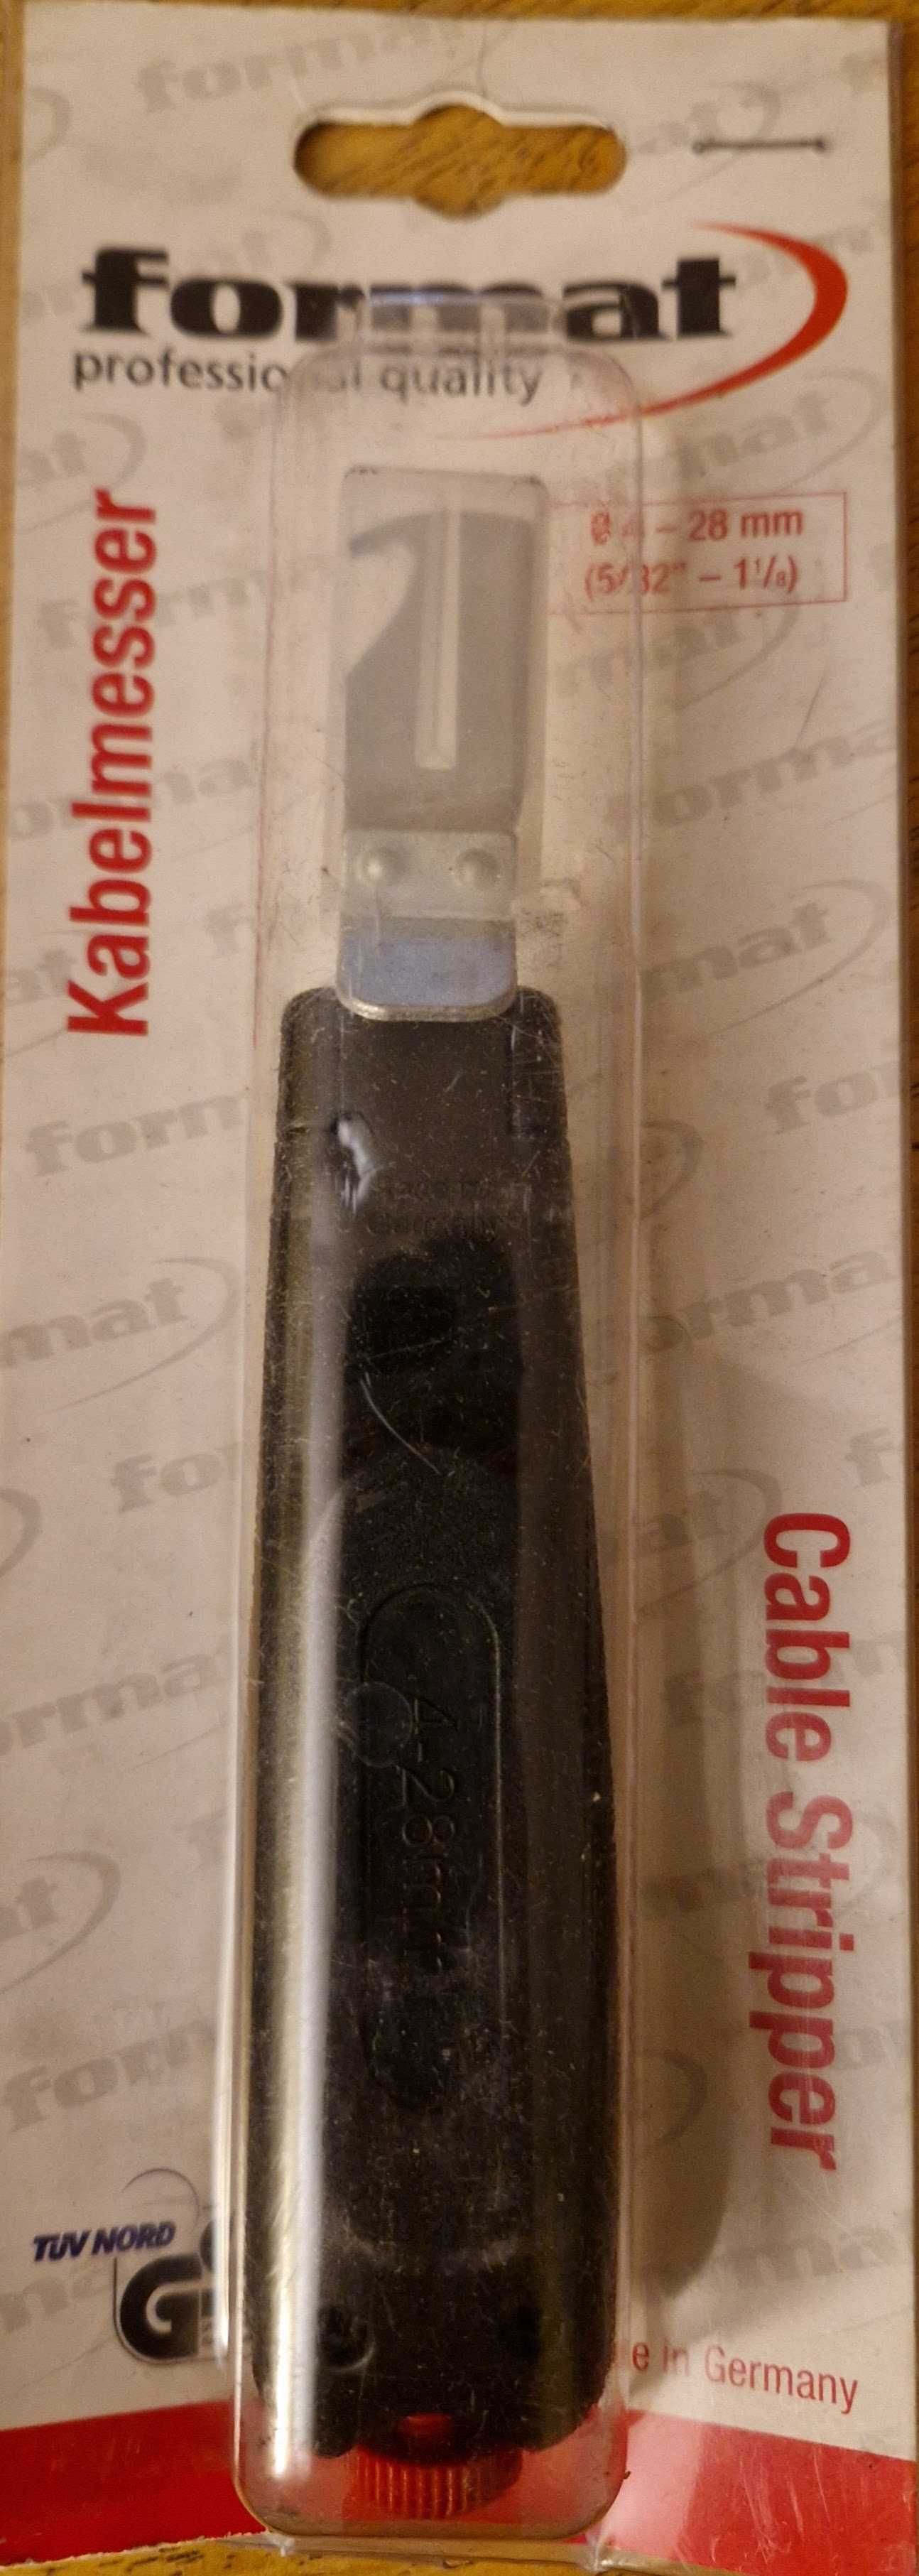 FORMAT cable stripper - narzędzie do ściągania izolacji - 4-28 mm